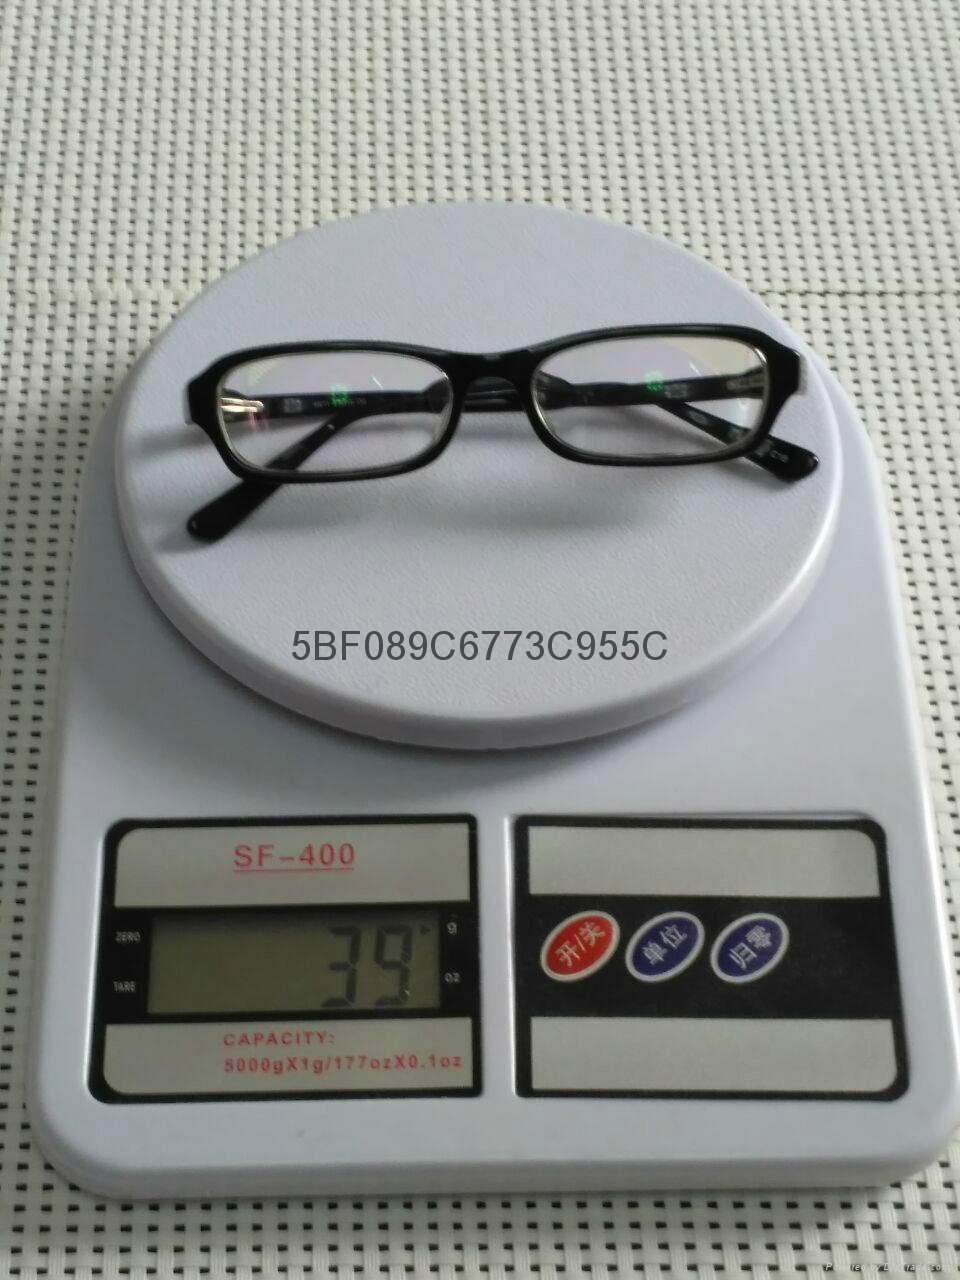 寰視眼鏡-2500度超薄超輕玻璃鏡 3